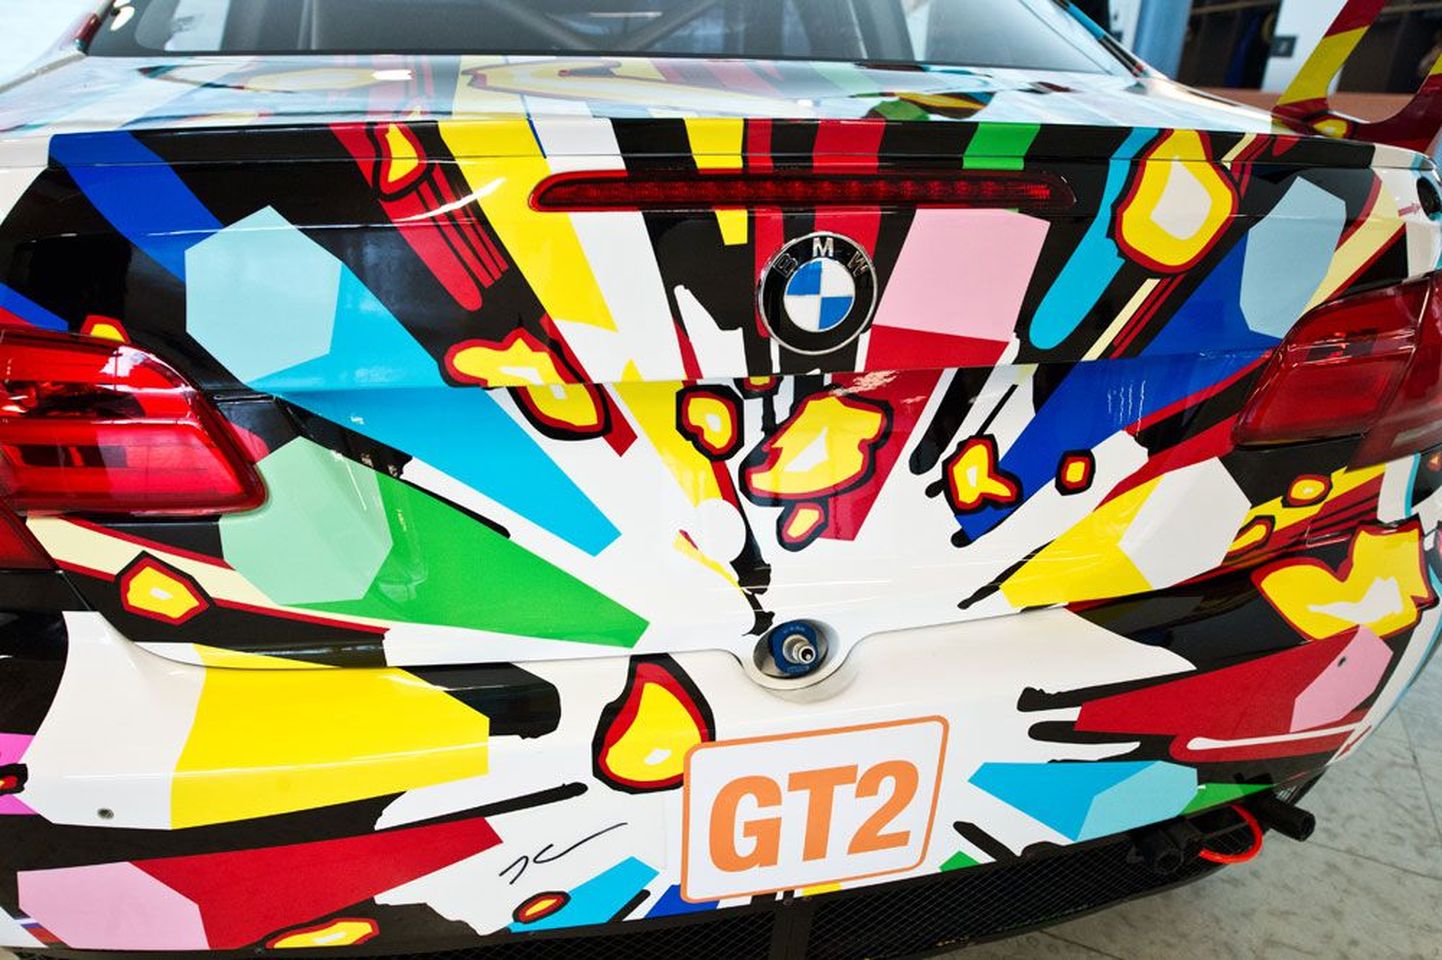 Jeff Koonsi kujundatut värvidest plahvatavat autot saab imetleda pühapäevast ja tasuta näitus jääb Kumus avatuks 28. juulini.